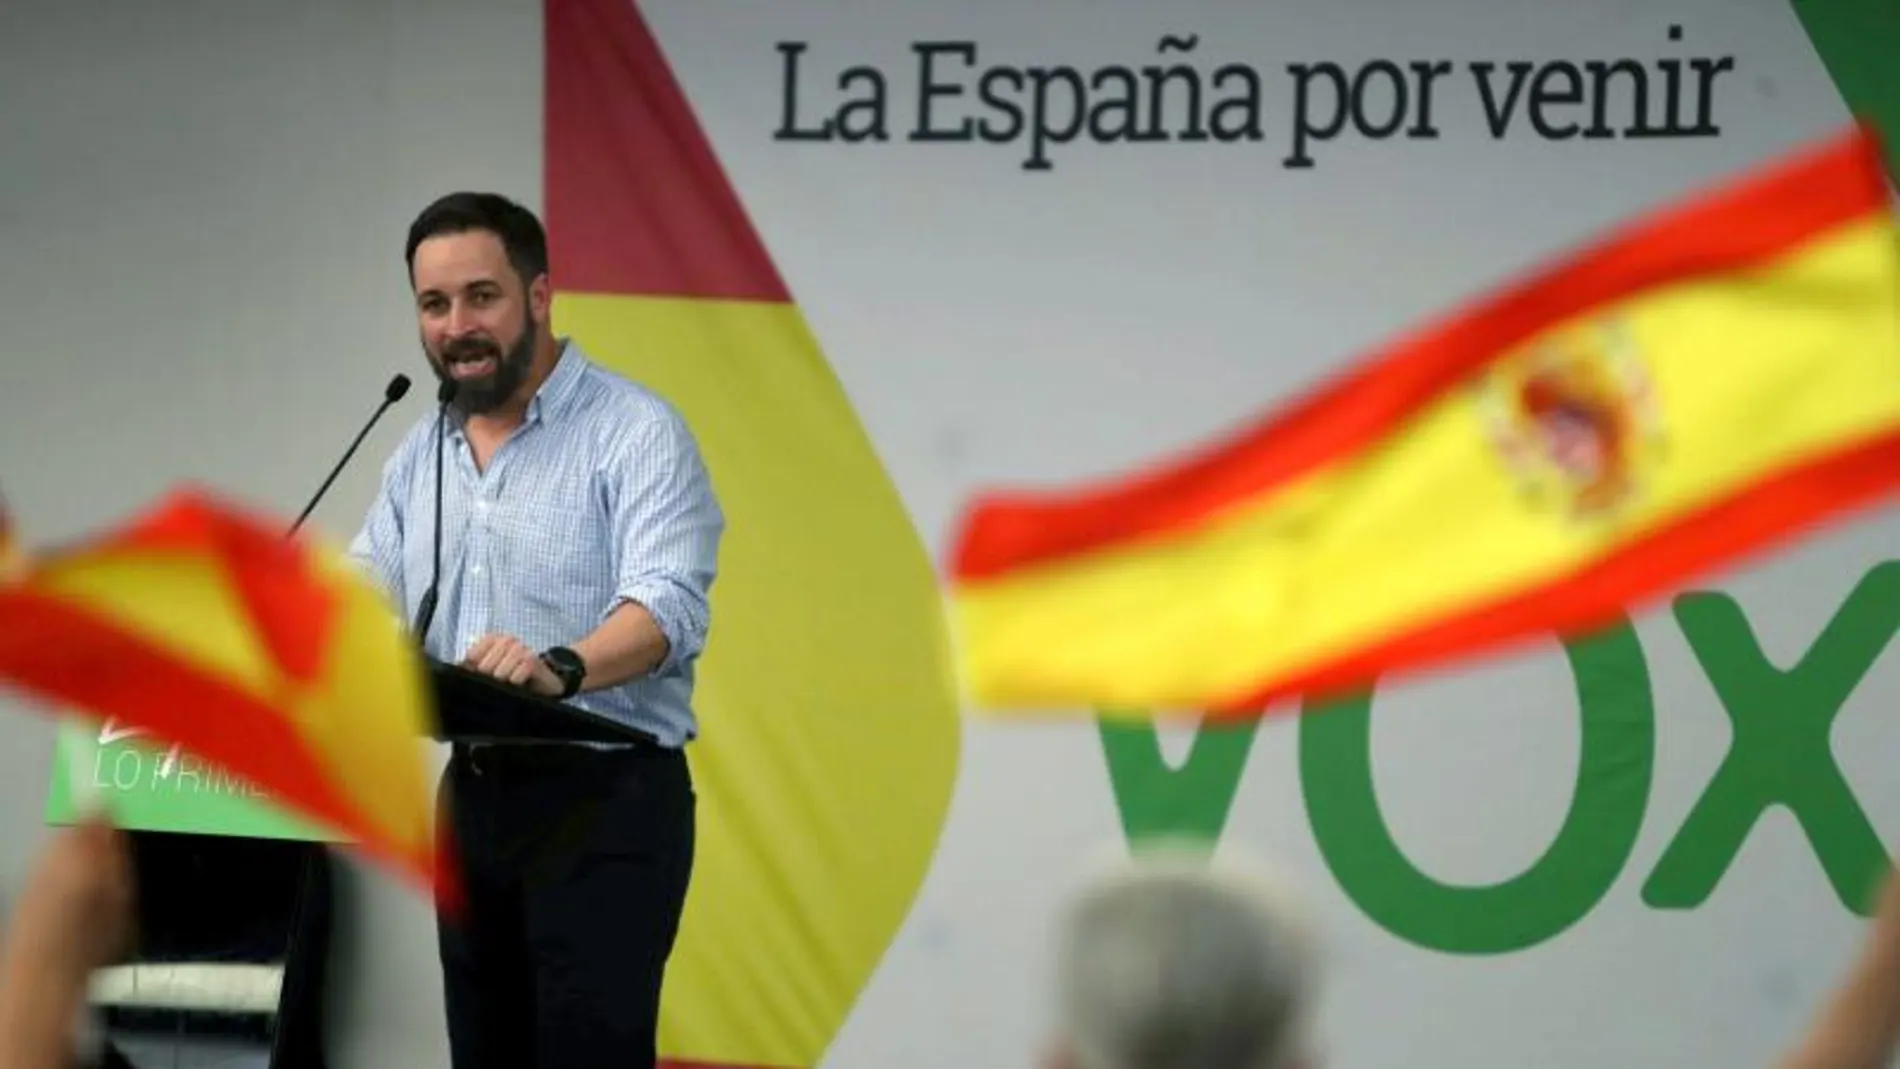 El presidente nacional de VOX, Santiago Abascal interviene en un acto celebrado en Barcelona